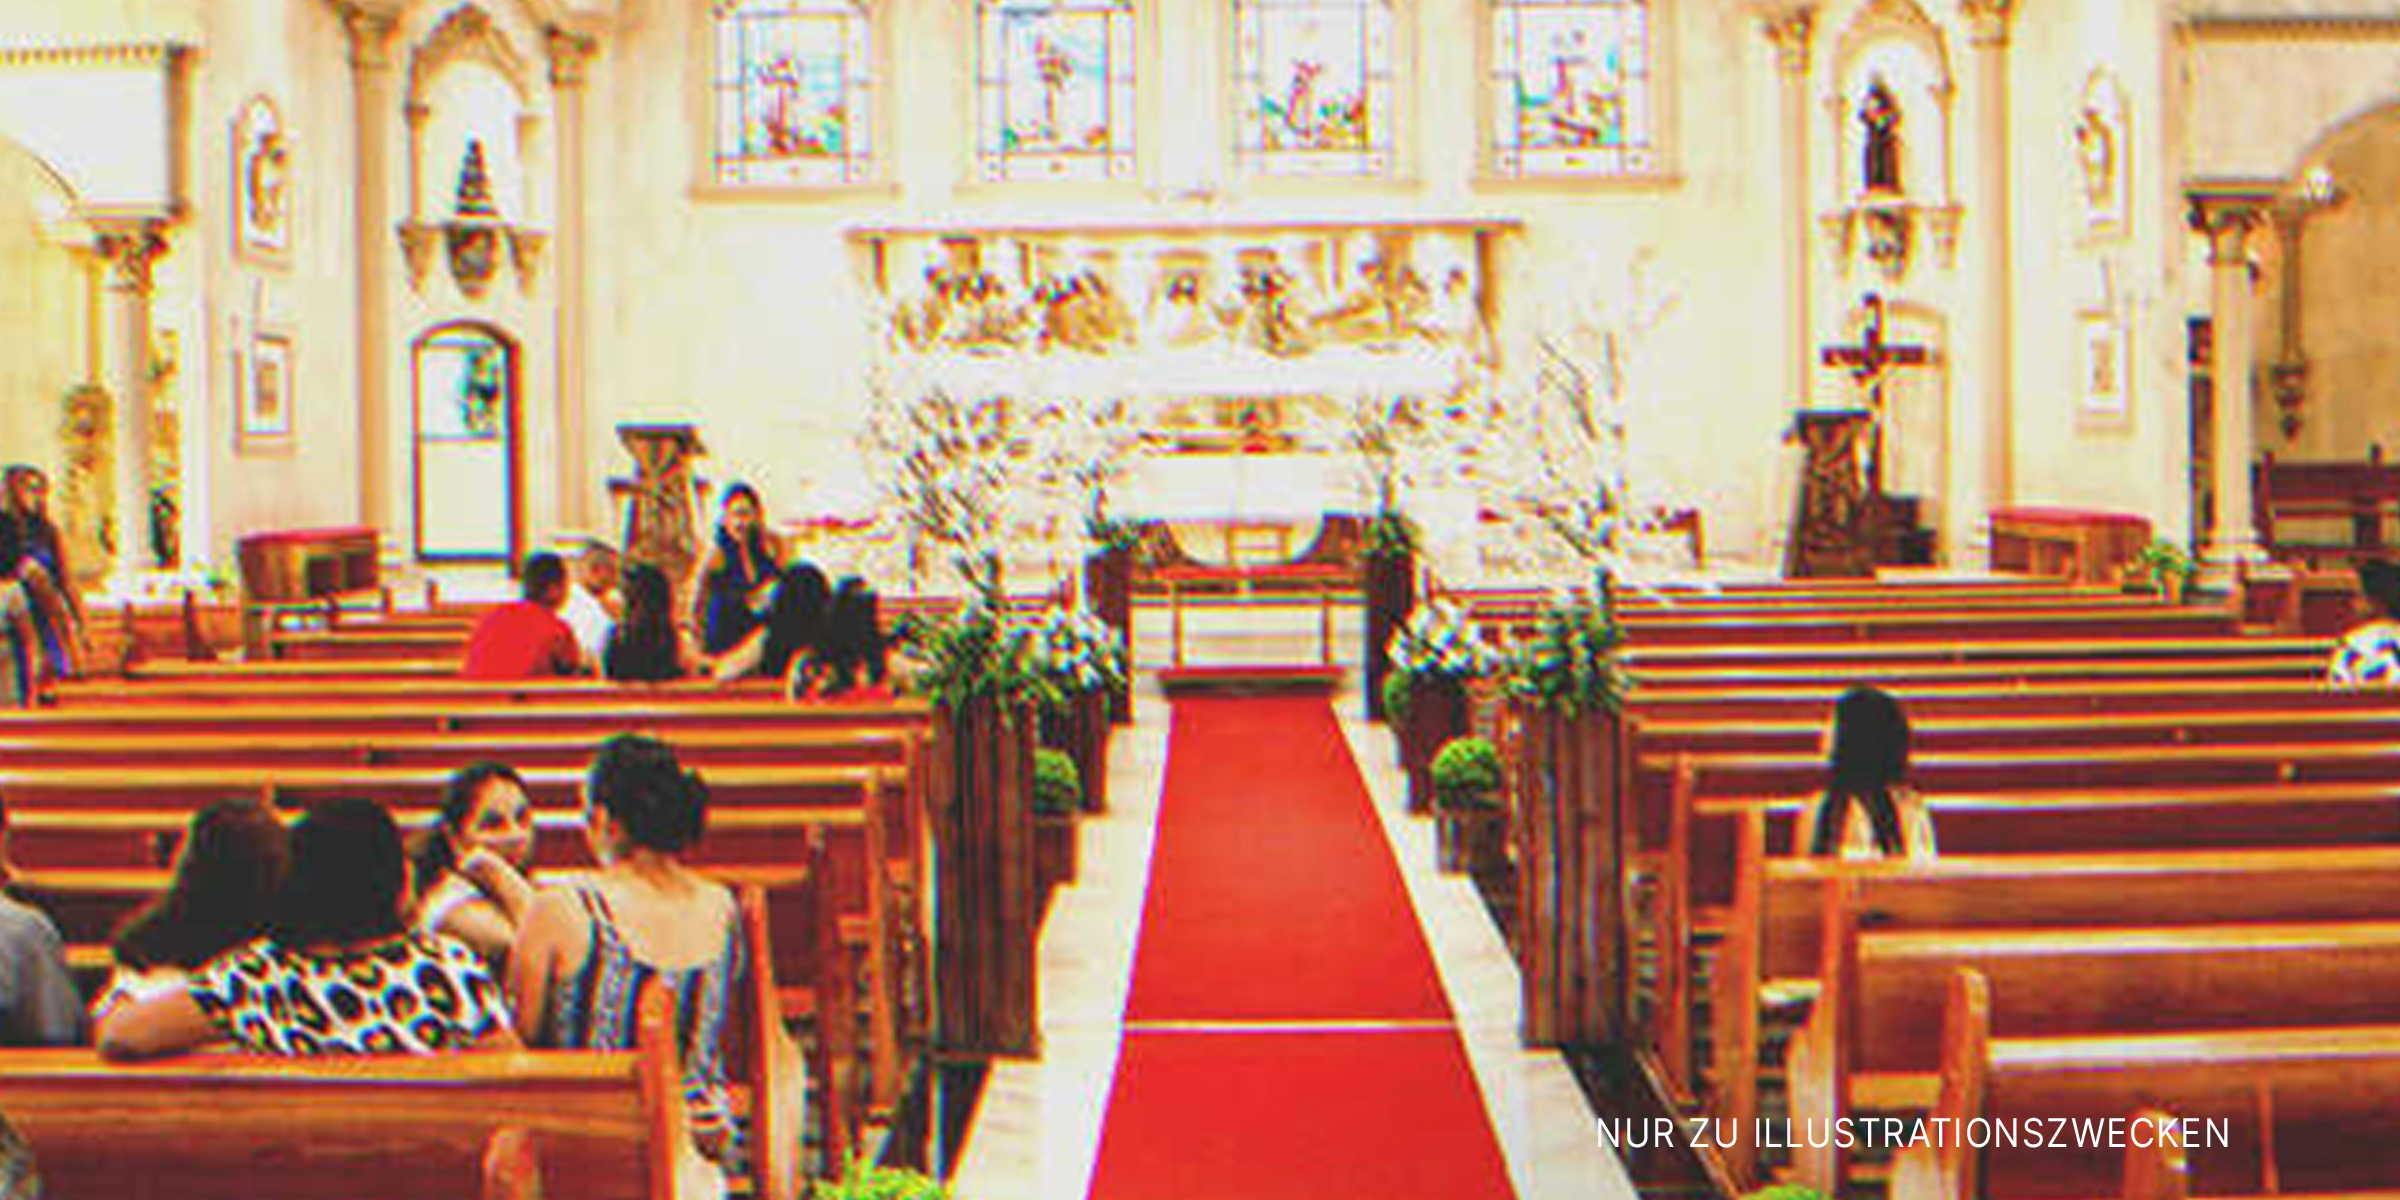 Eine Kirche während einer Hochzeitszeremonie | Quelle: Shutterstock